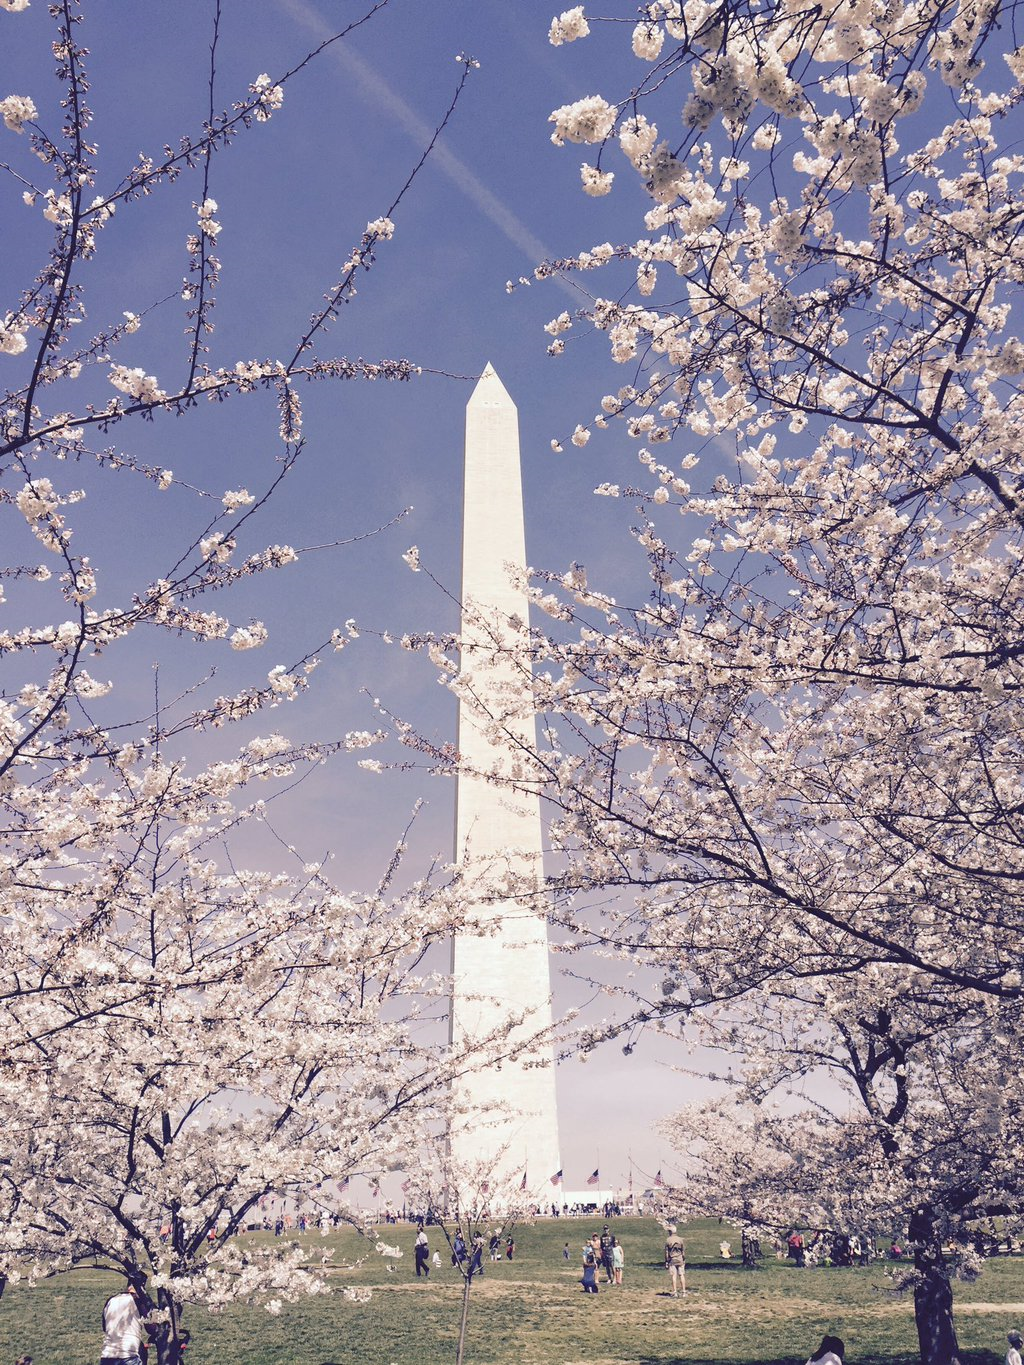 Washington Monument to reopen Sunday